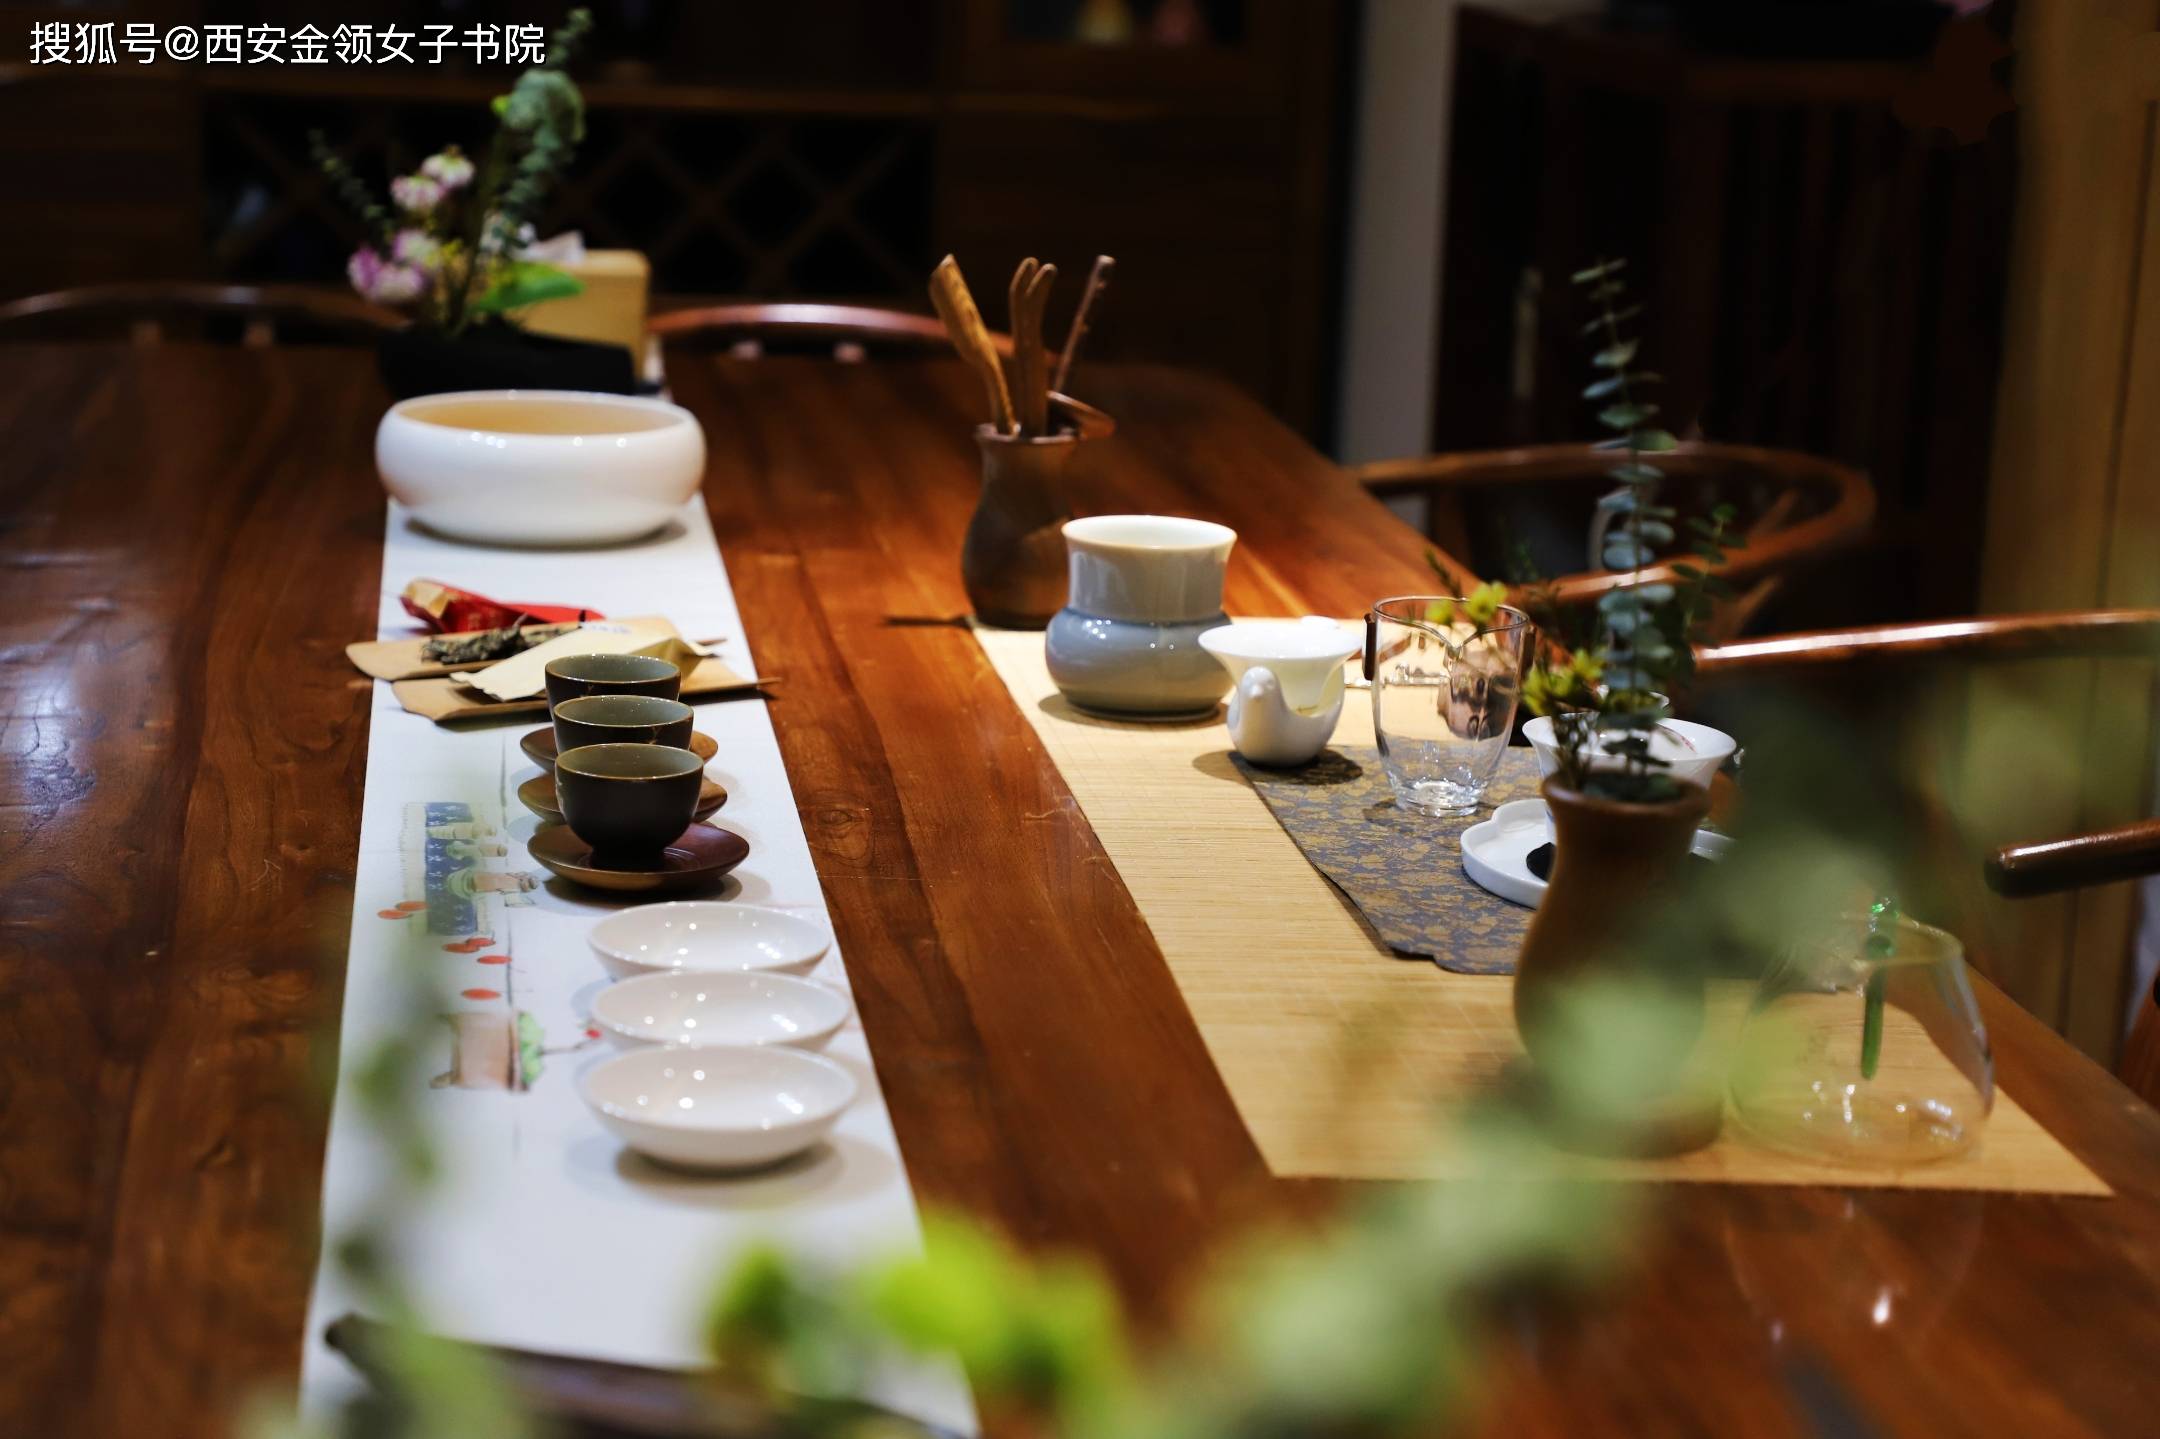 【长安茶馆】喝茶人的必修课:六大茶类洗茶常识